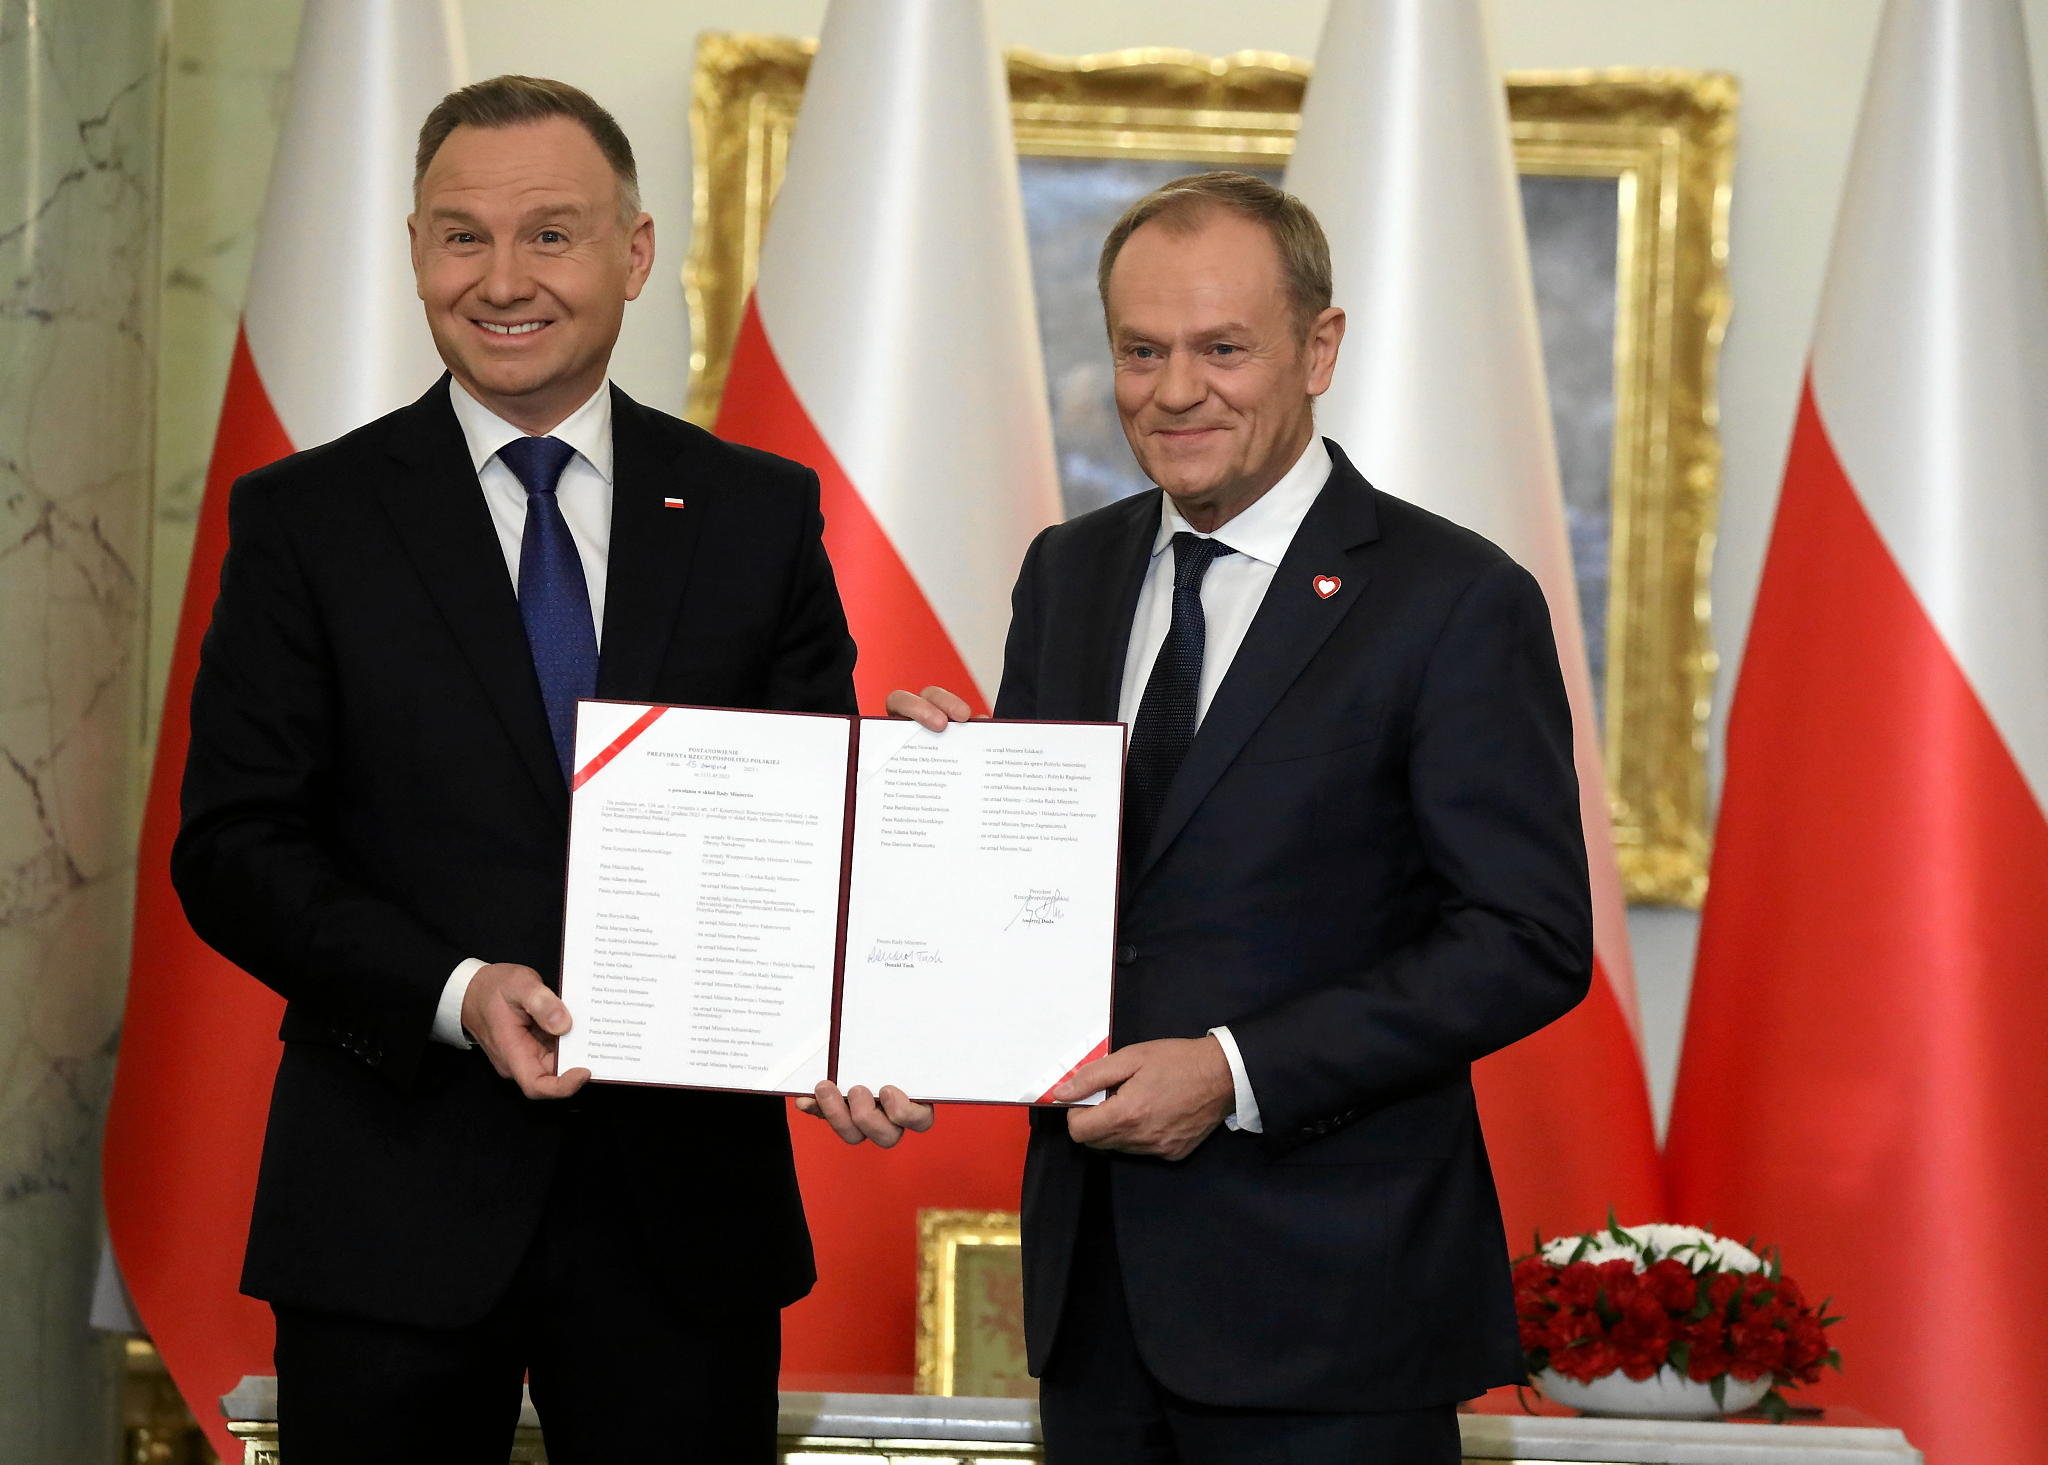 konflikt tuska z dudą zagraża bezpieczeństwu polski? wyborcy pis i po jednomyślni [sondaż]